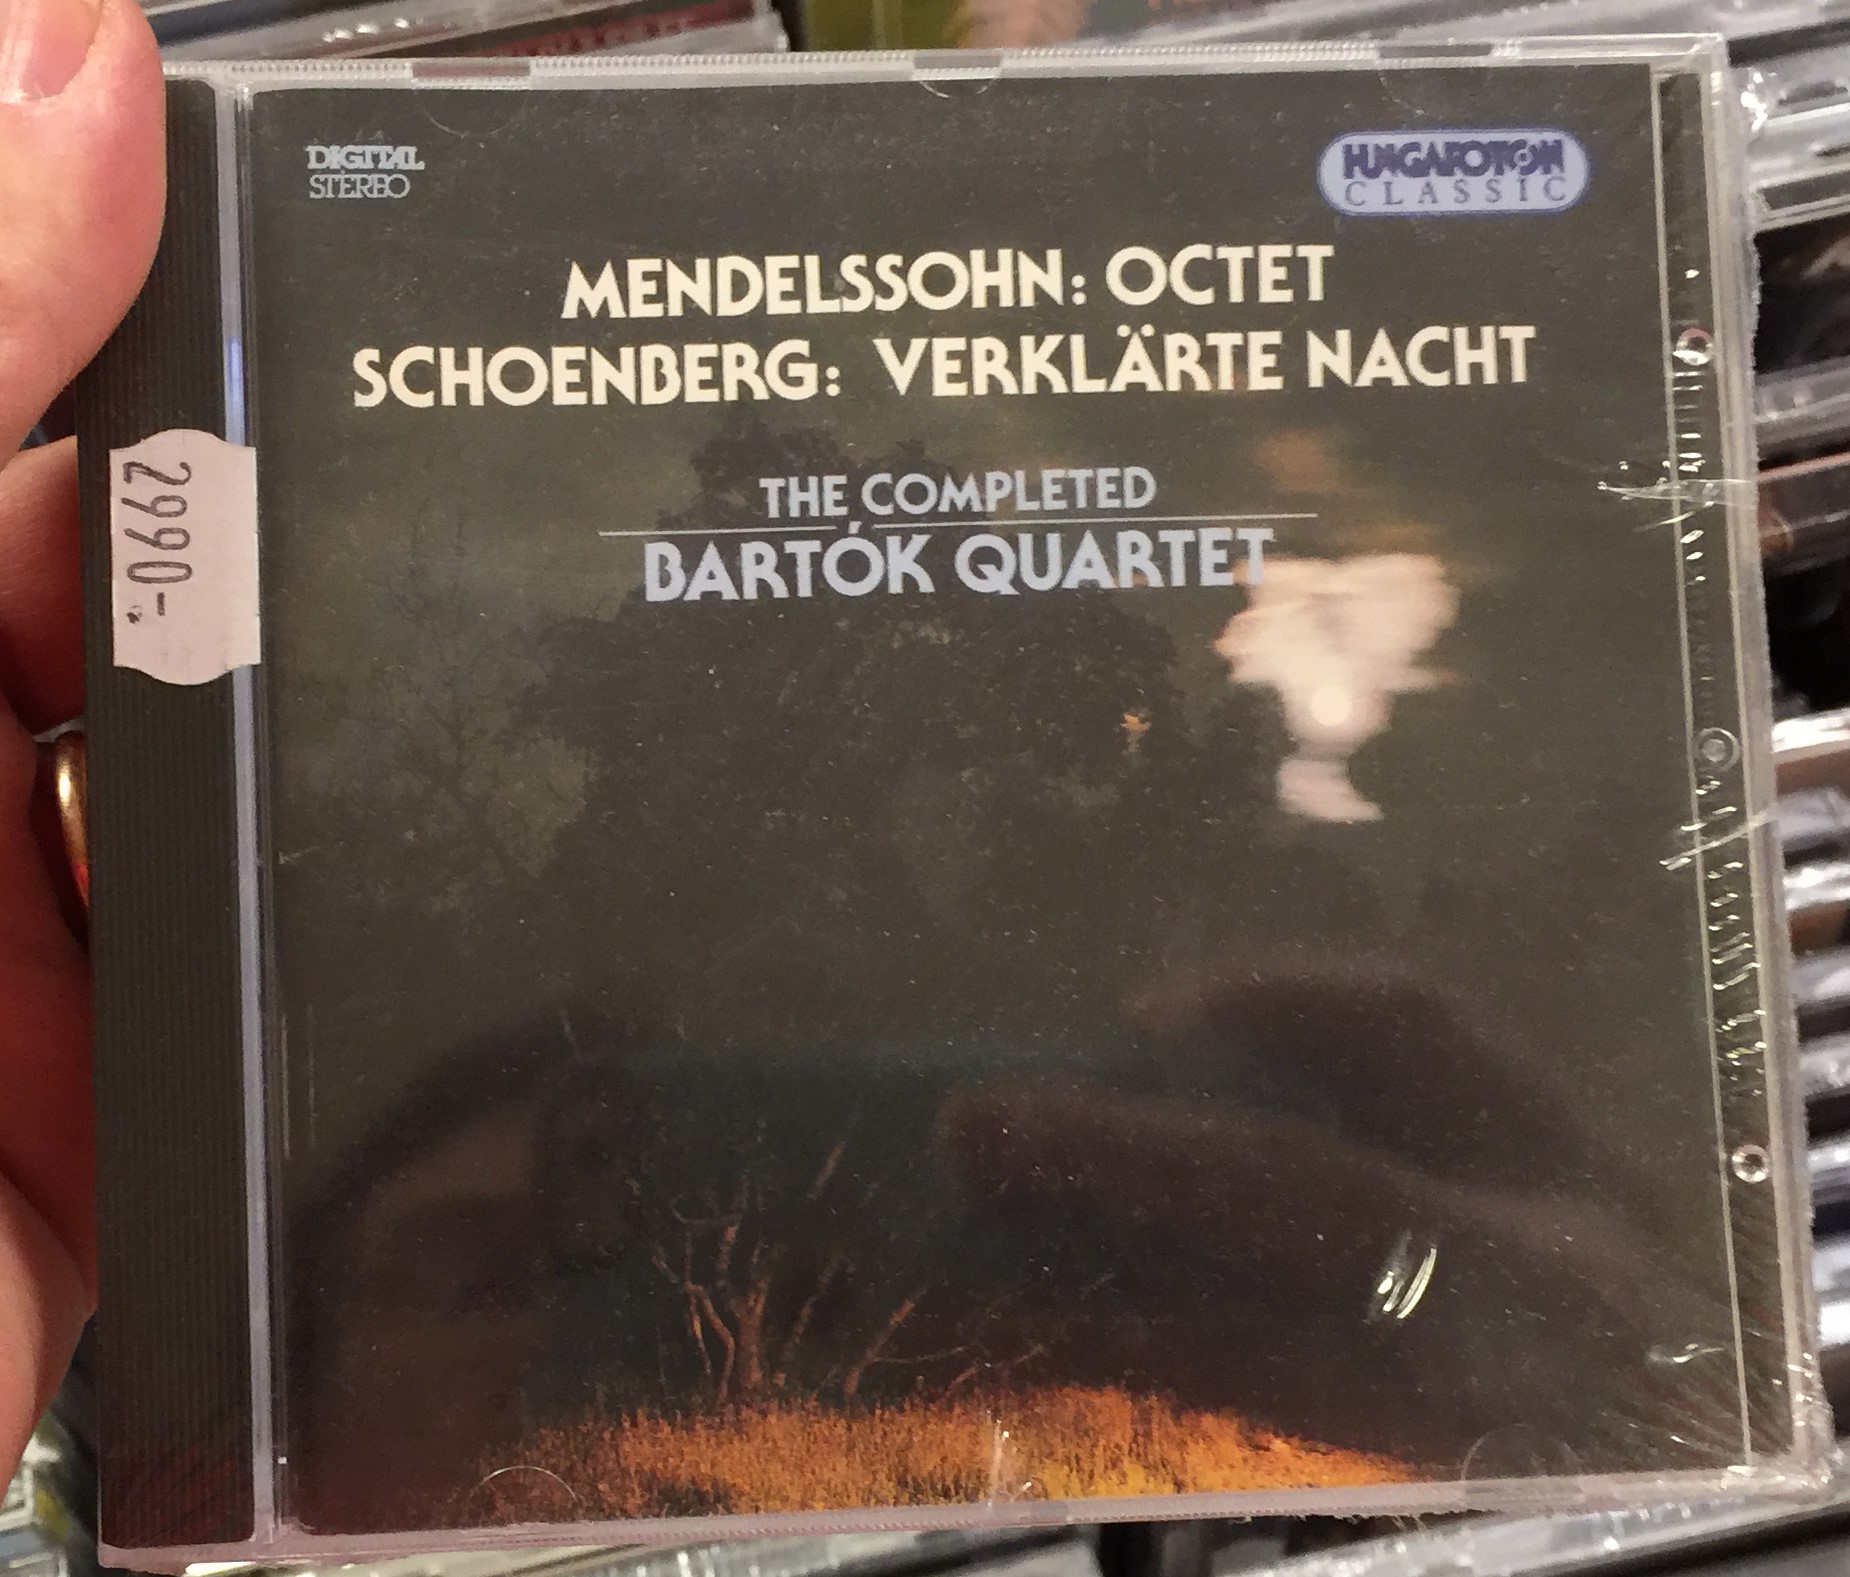 mendelssohn-octet-schoenberg-verklarte-nacht-the-completed-bartok-quartet-hungaroton-classic-audio-cd-1994-stereo-hcd-31351-1-.jpg